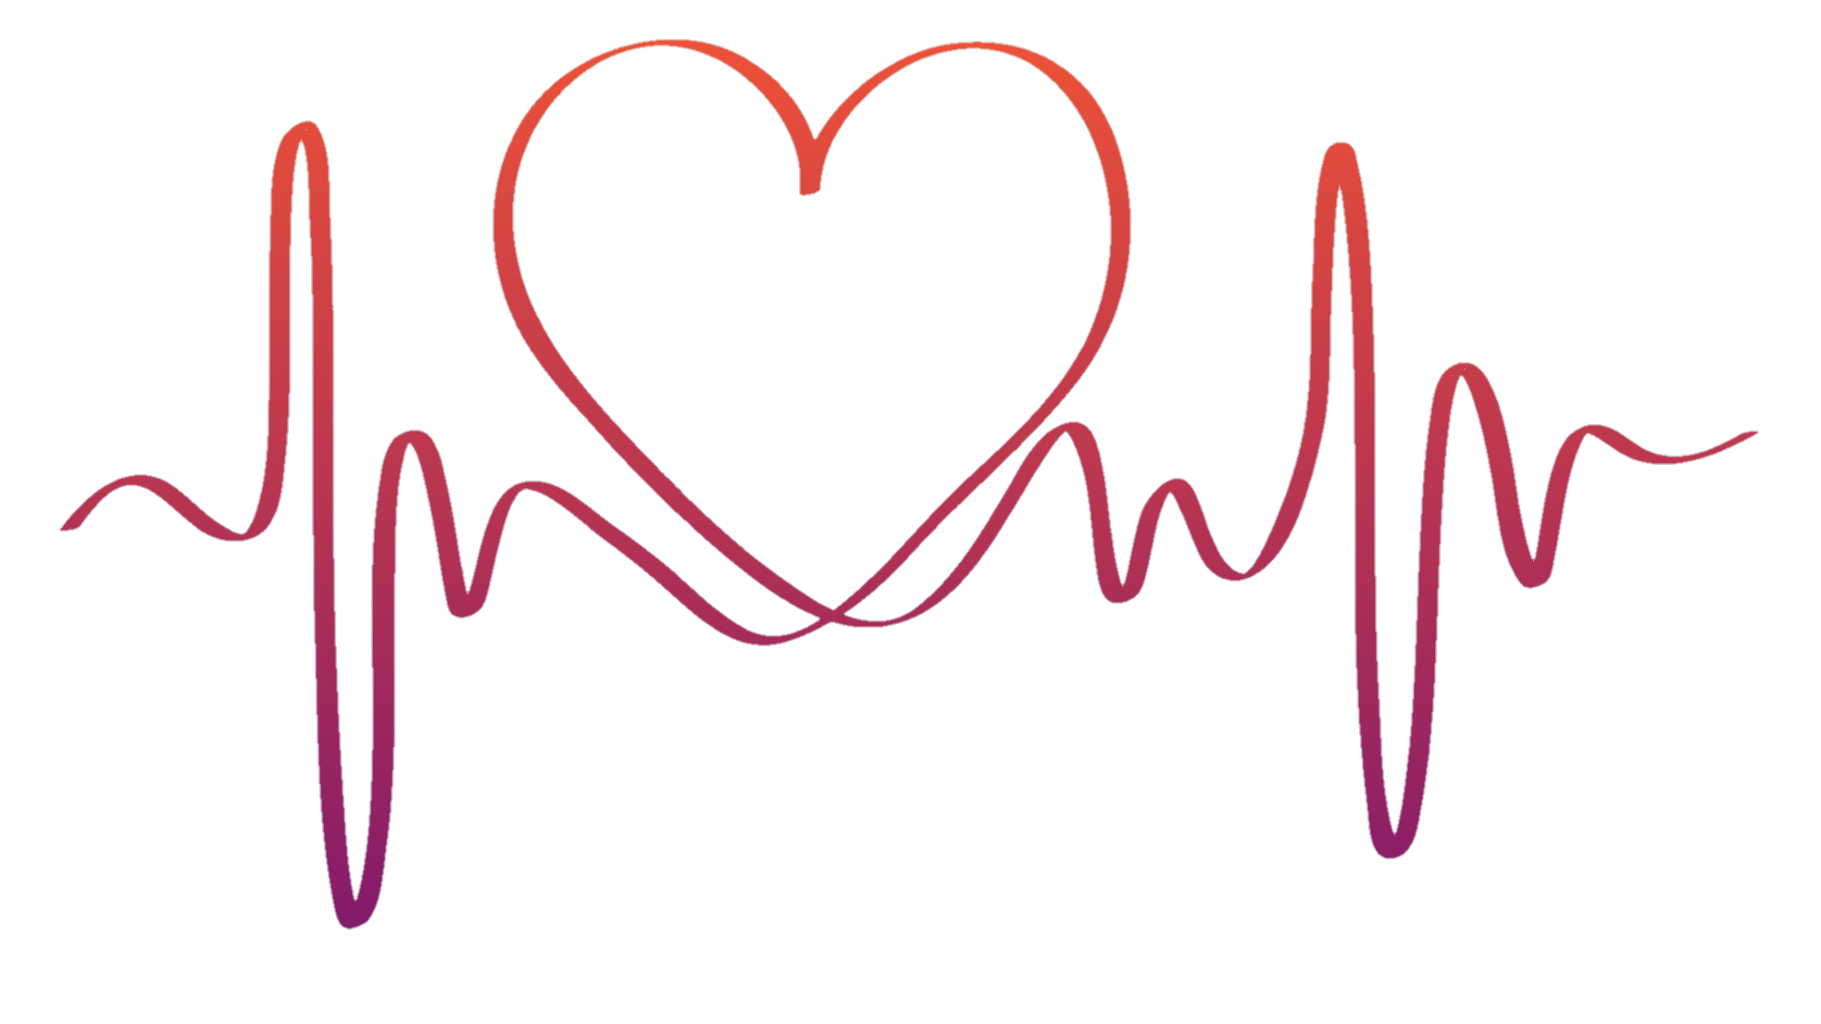 coraçao corazón heart design freetoedit sticker by @pathy61.